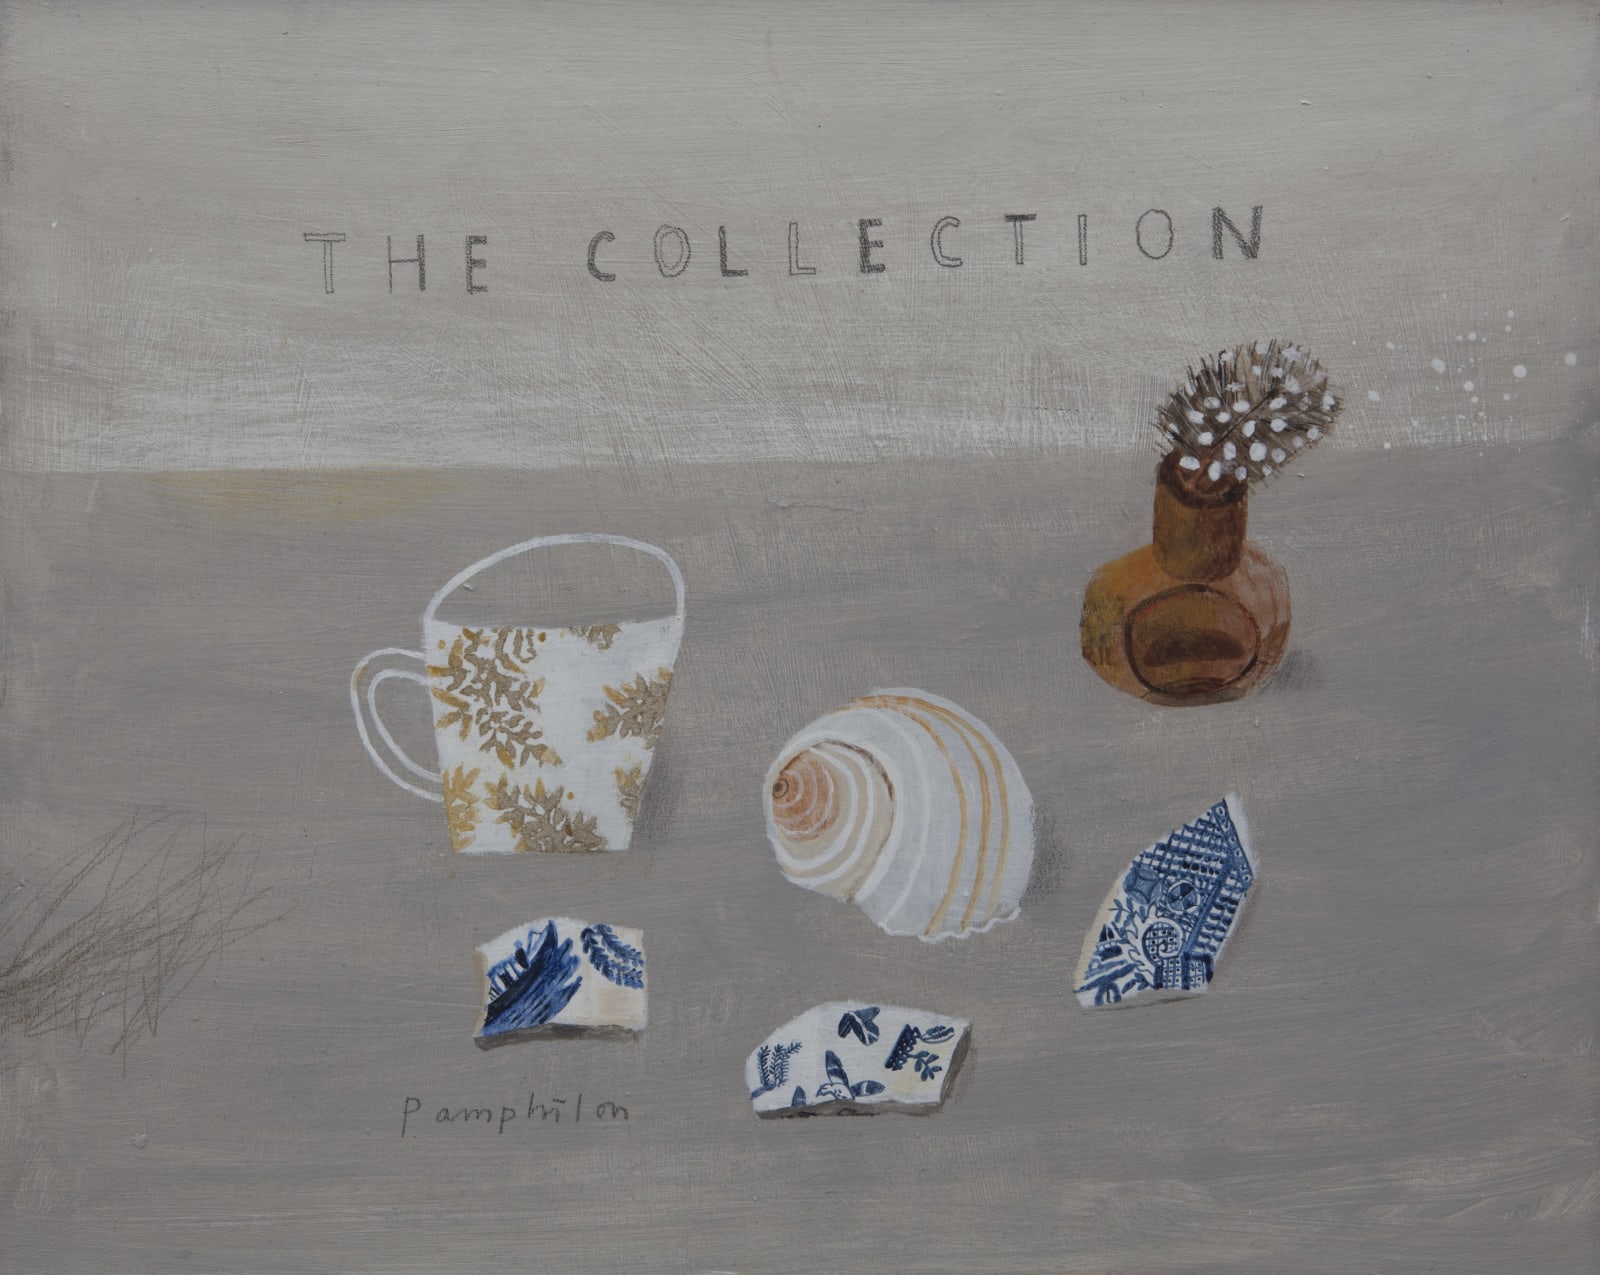 Elaine Pamphilon, The Collection